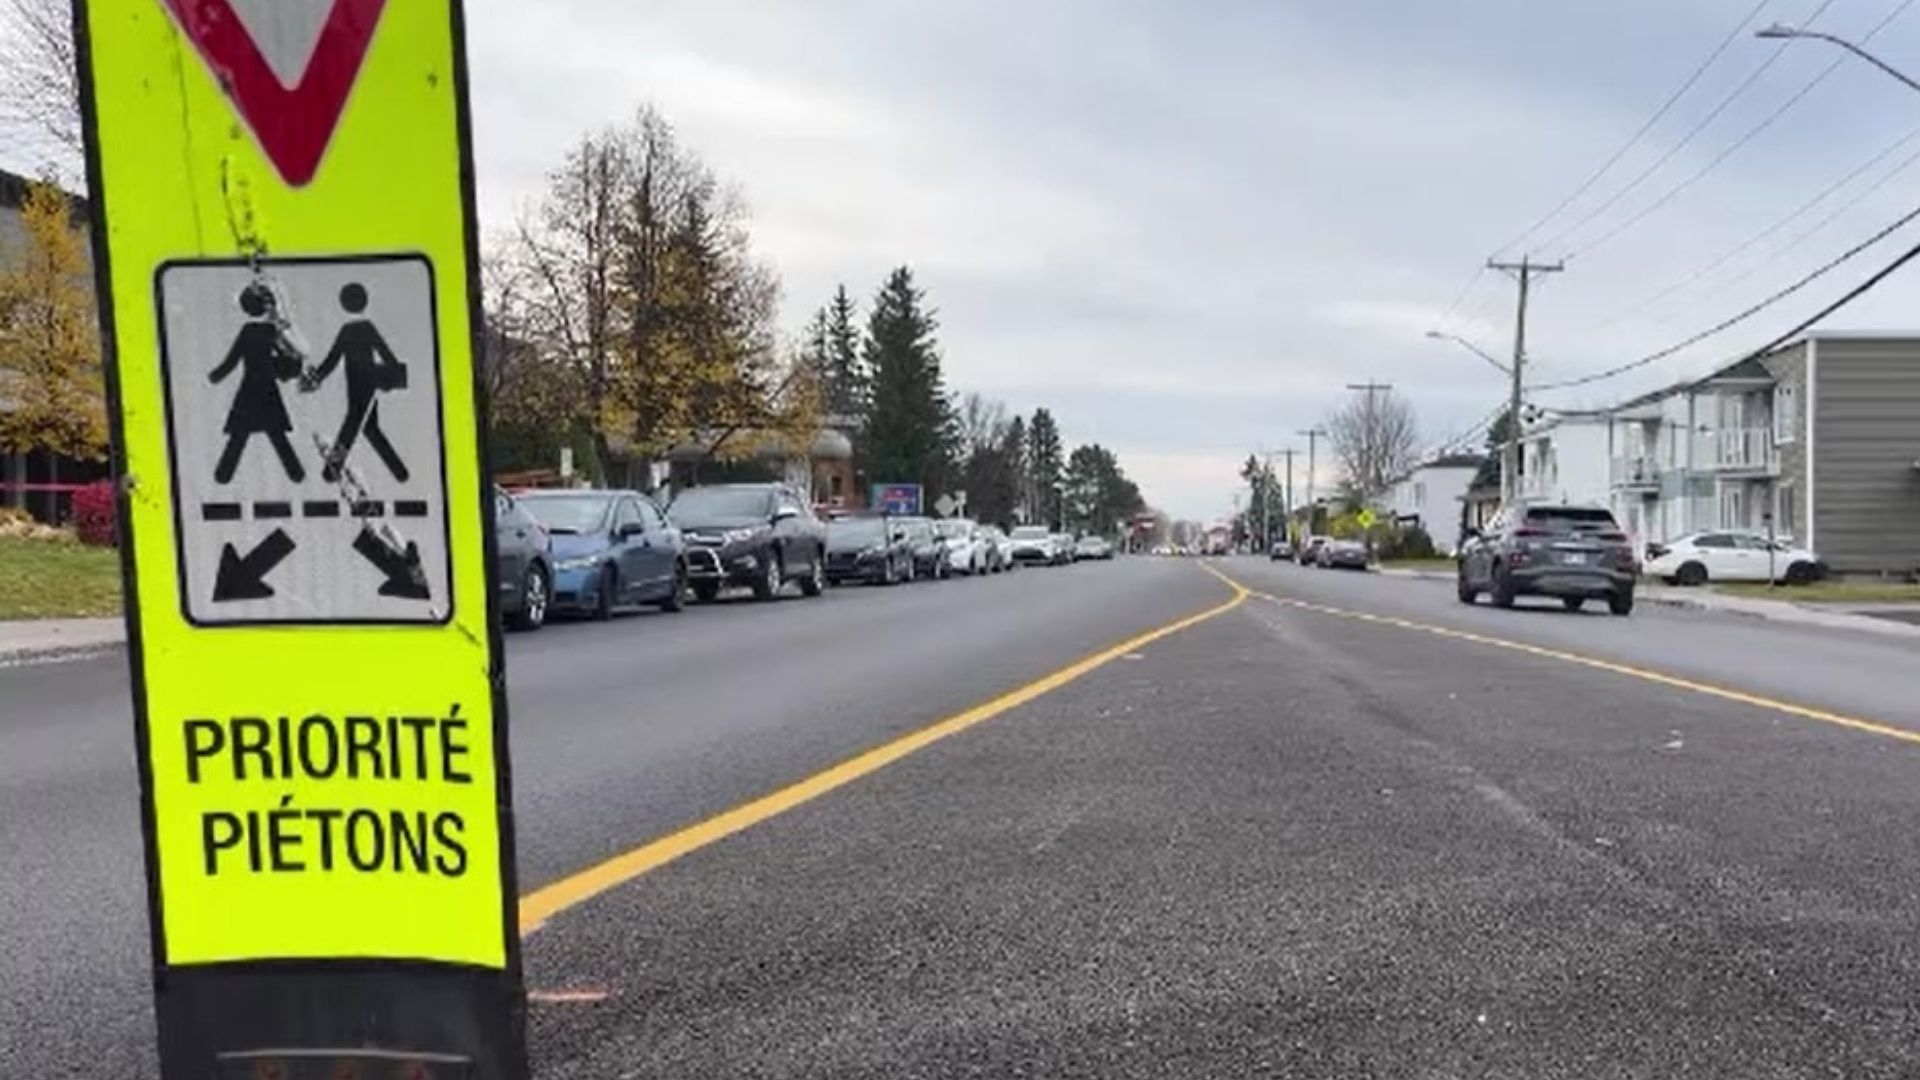 La ville de Sherbrooke poursuit ses efforts afin d'augmenter la sécurité routière sur son territoire, notamment sur la rue Saint-François Nord, aux intersections des rues Lévesque et Clemenceau.